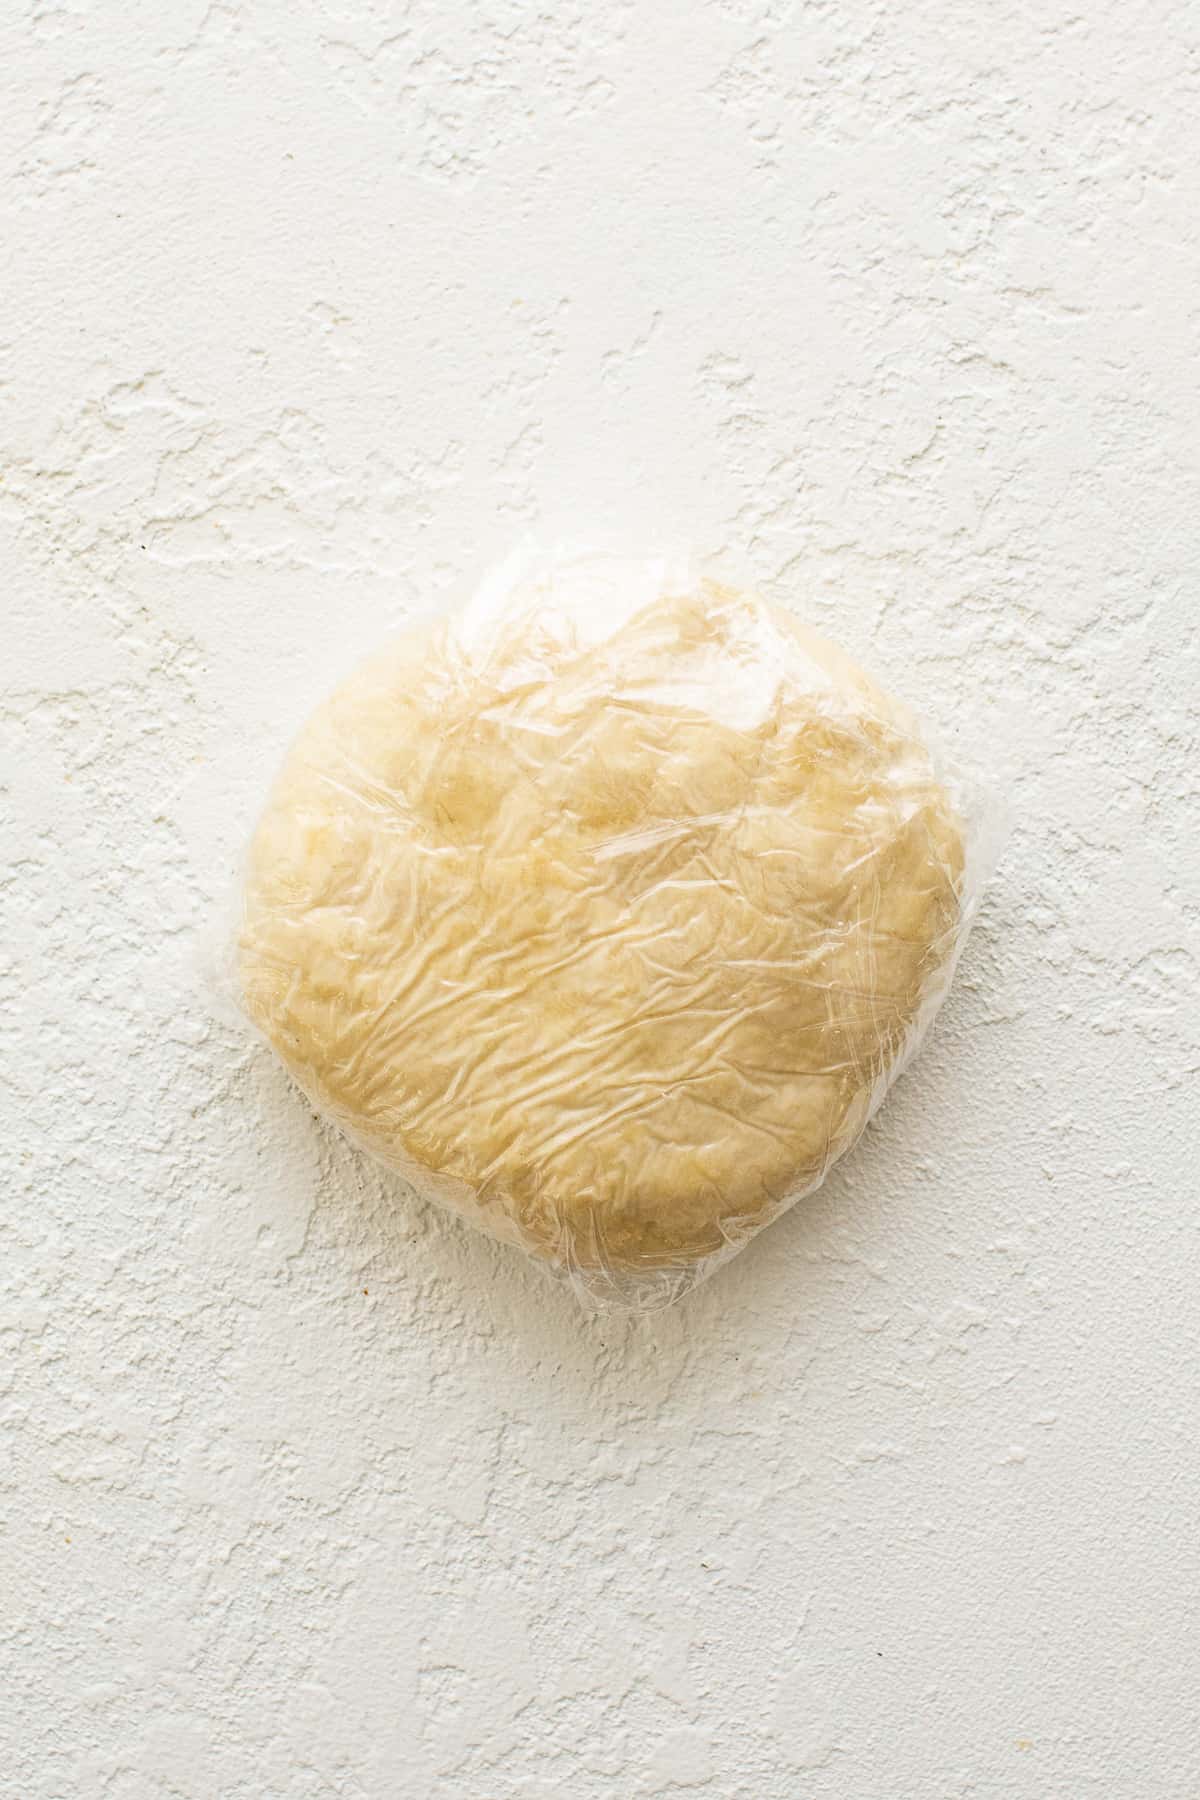 Ζύμη Empanada τυλιγμένη σε πλαστική μεμβράνη.